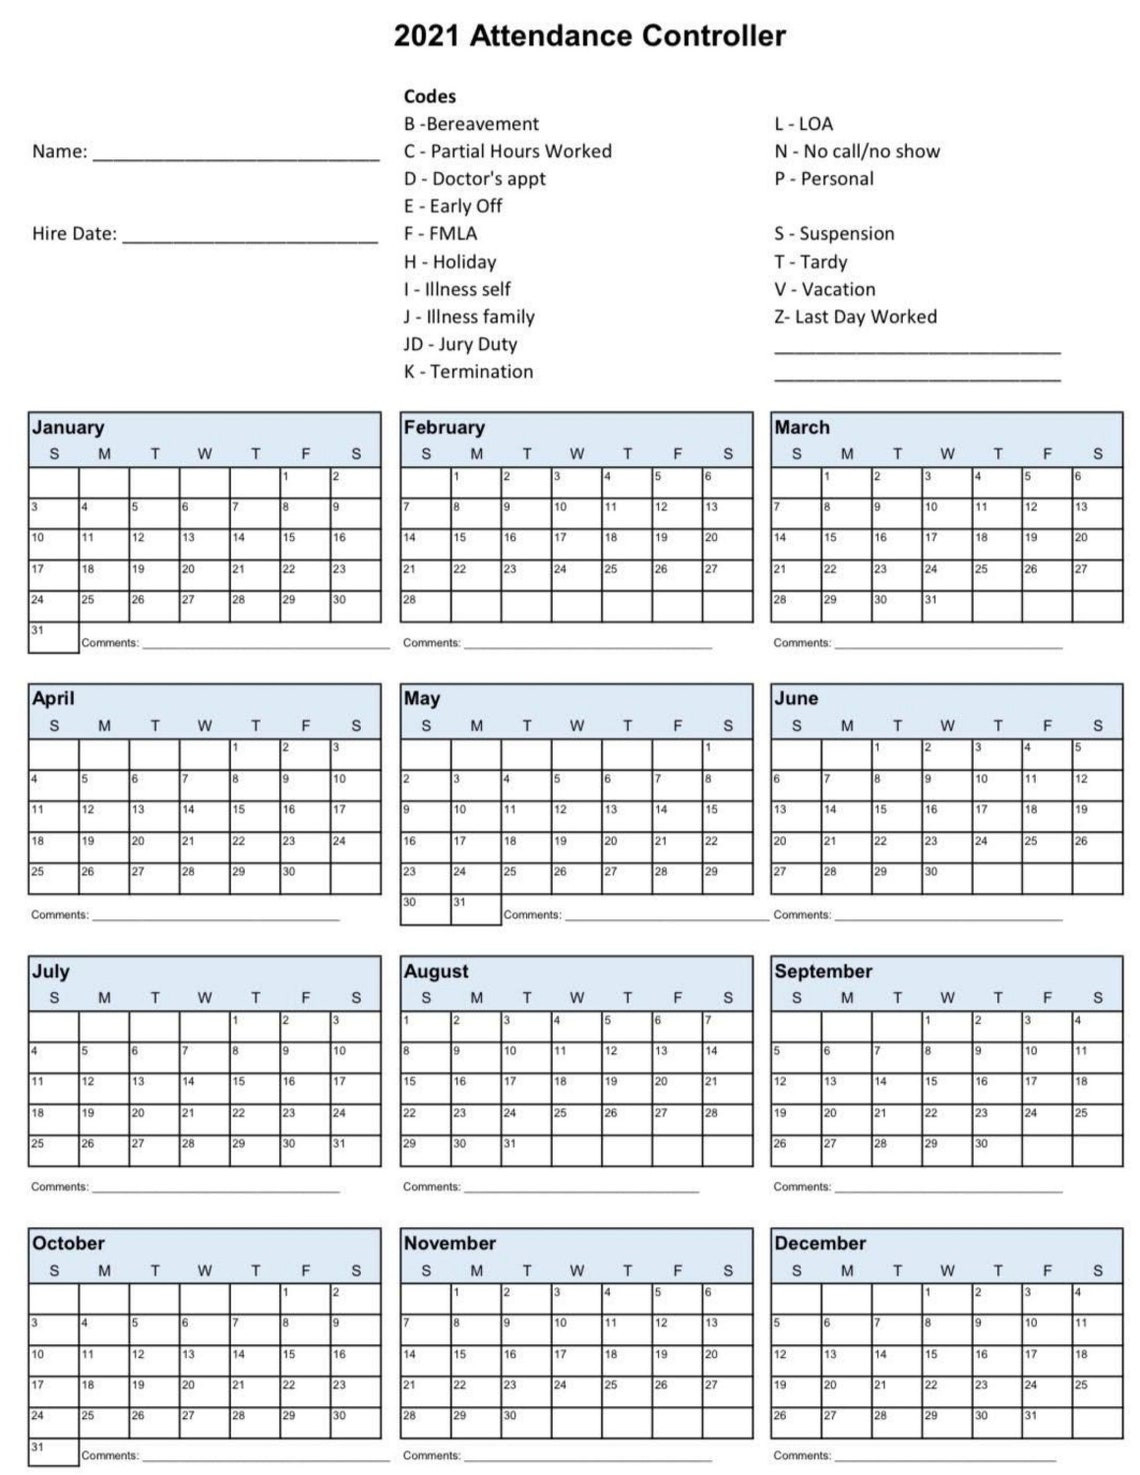 2021 Employee School Attendance Tracker Calendar Employee-2021 Employee Absentee Calendar